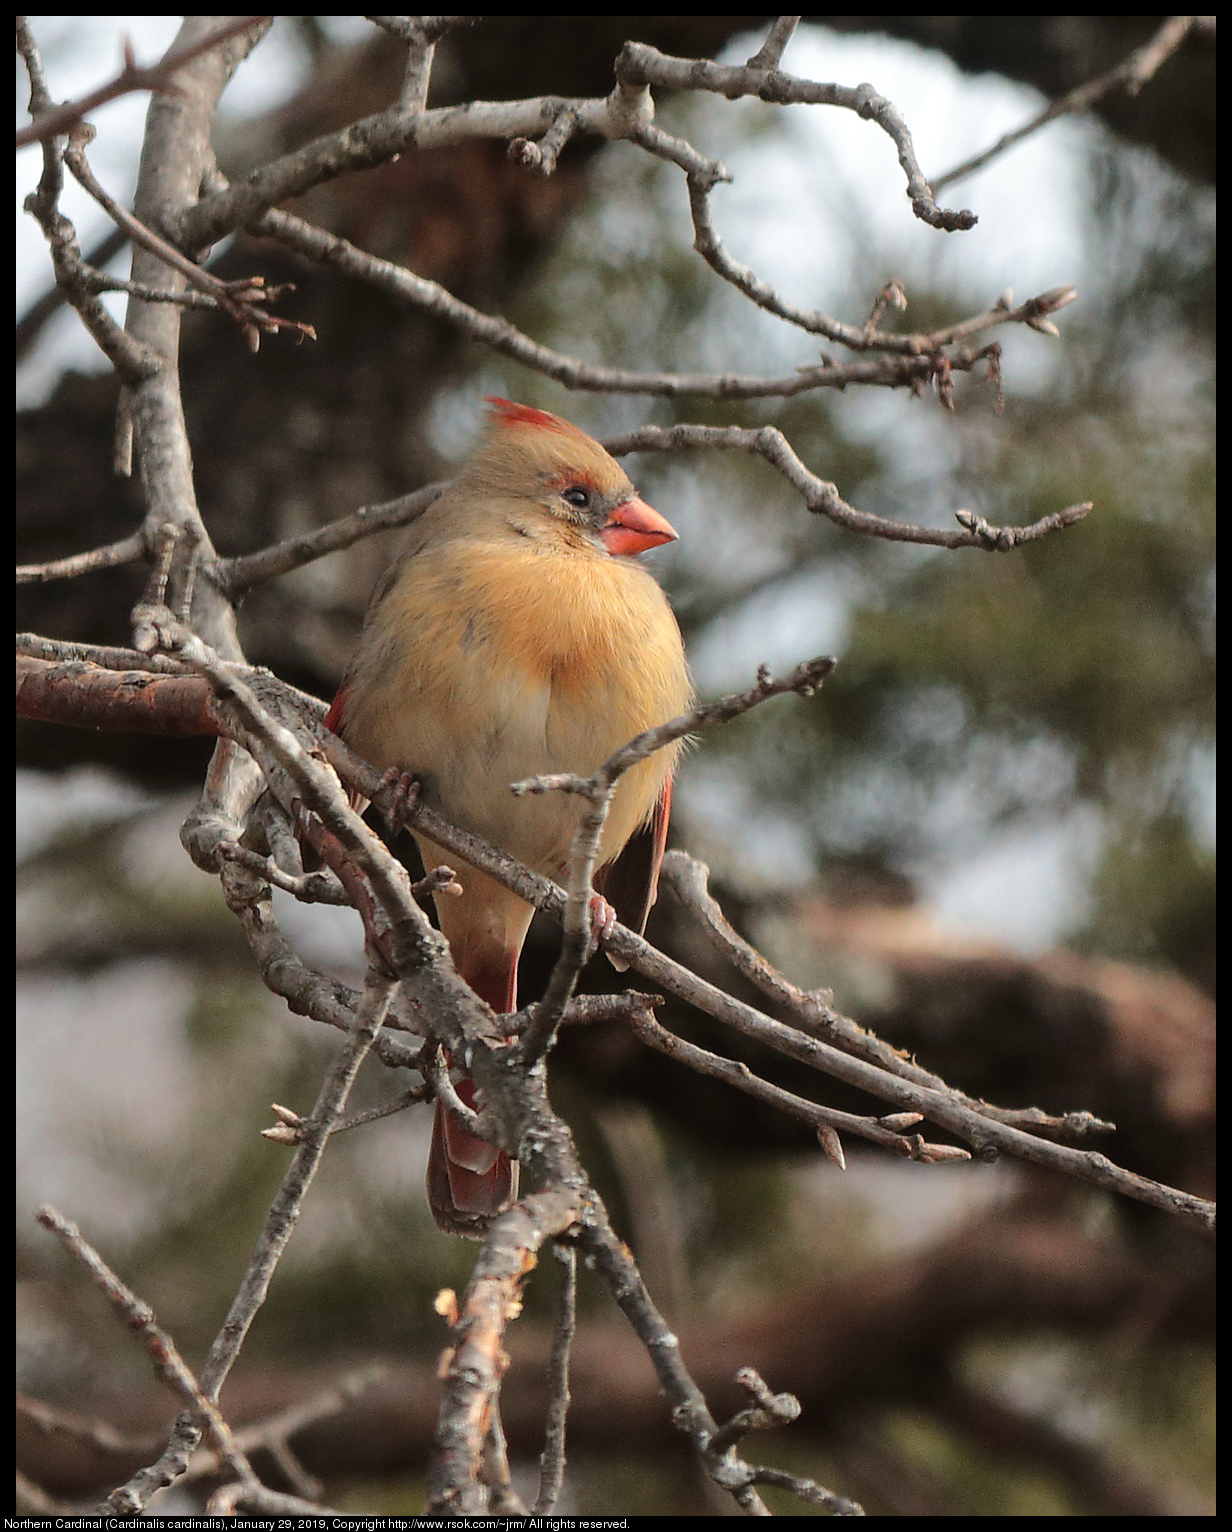 Northern Cardinal (Cardinalis cardinalis), January 29, 2019